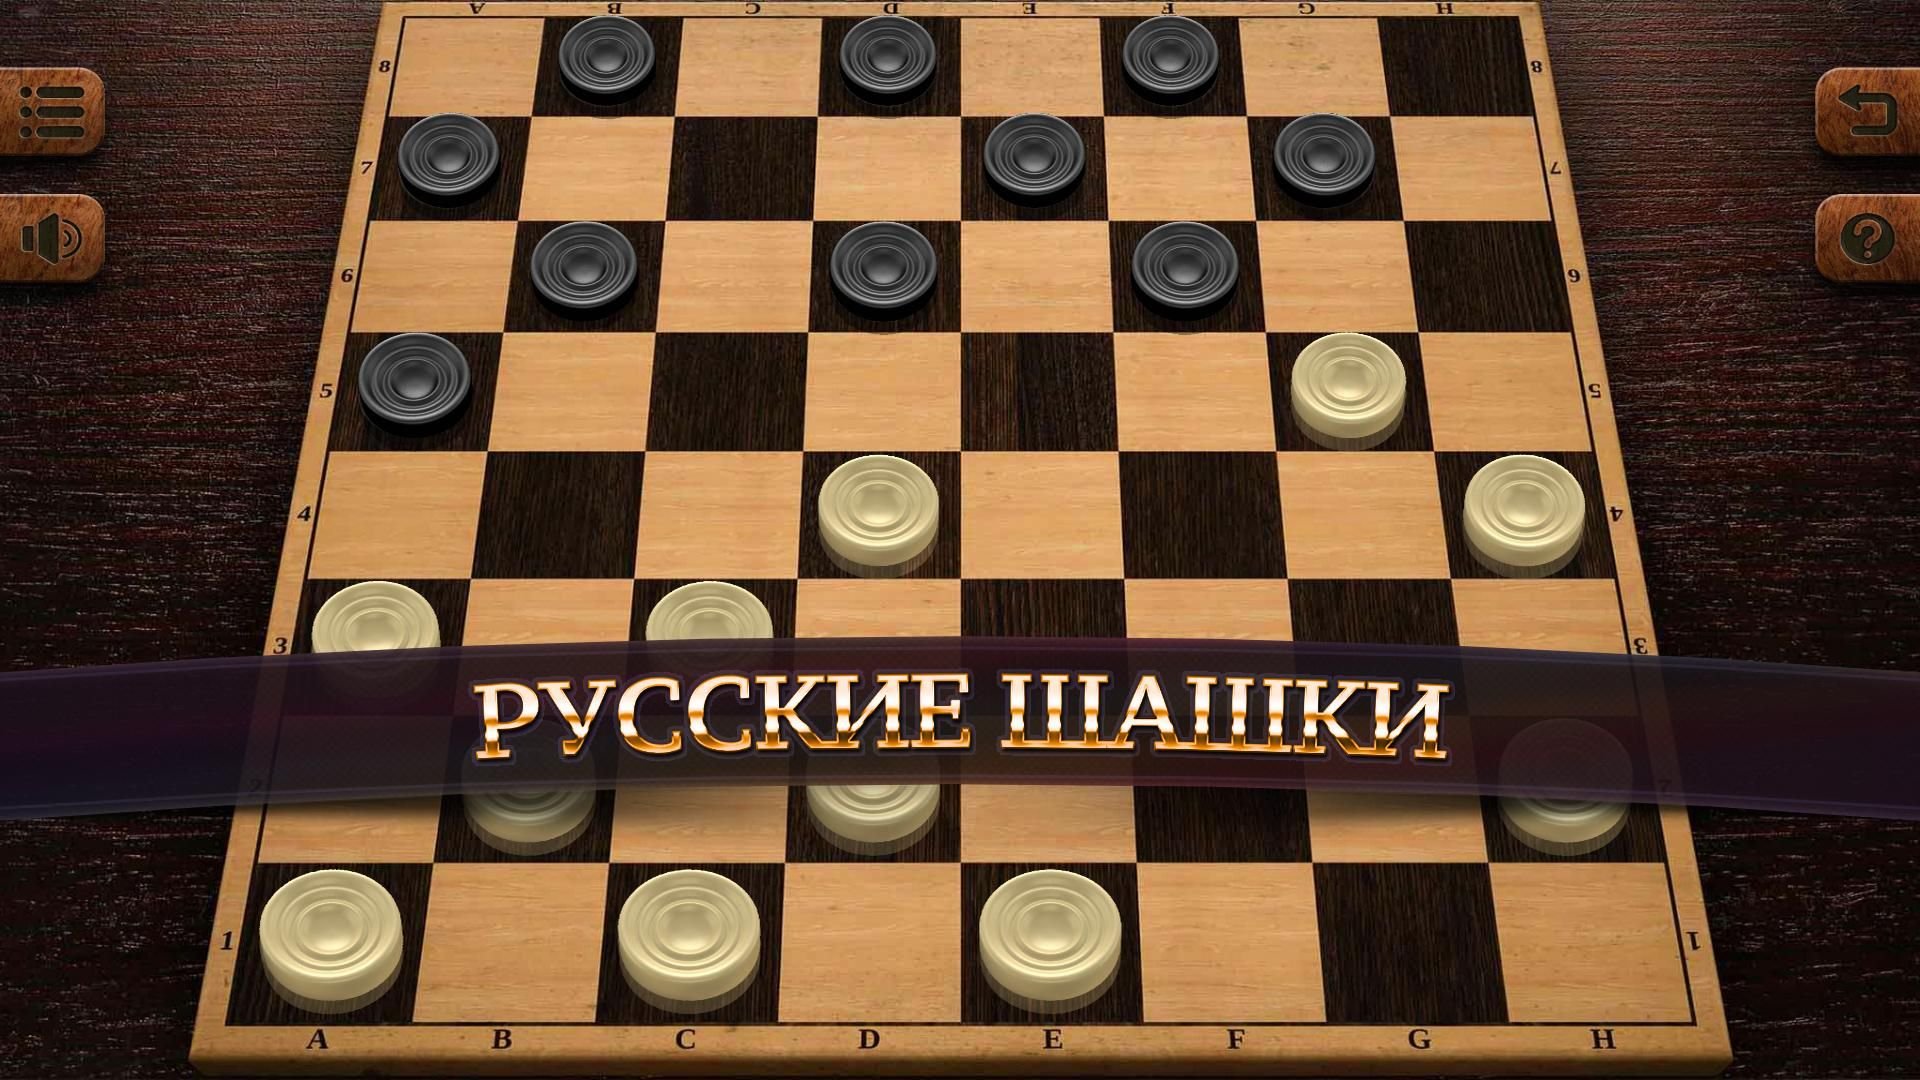 Игра в шашки одной шашкой. Русские шашки 8.1.50. Чекерс шашки. Русские шашки 3.11.